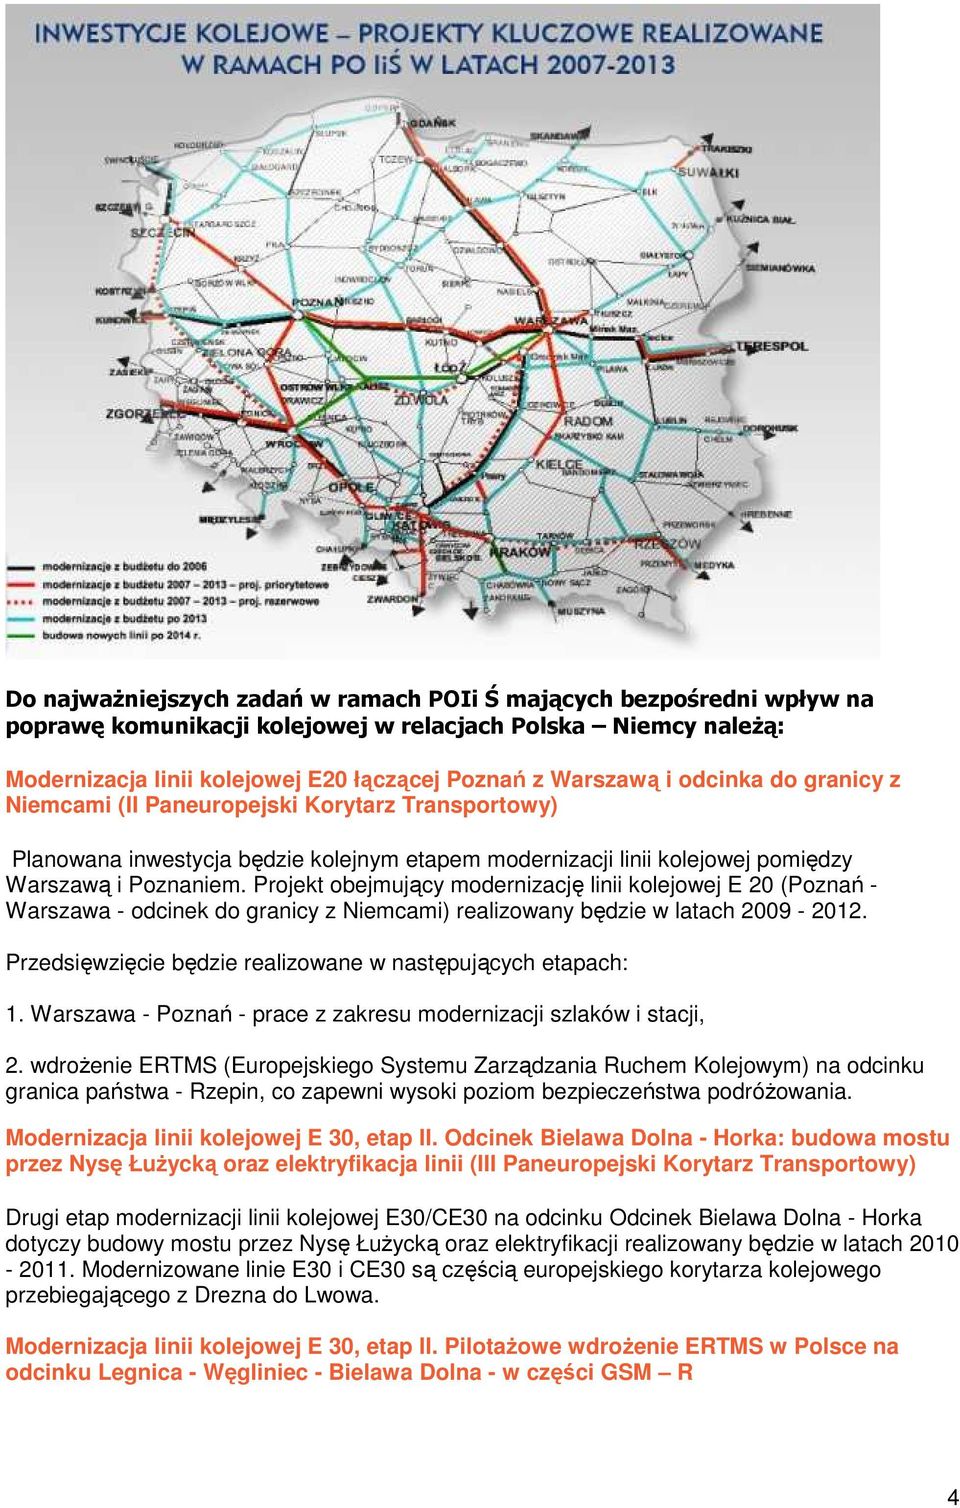 Projekt obejmujący modernizację linii kolejowej E 20 (Poznań - Warszawa - odcinek do granicy z Niemcami) realizowany będzie w latach 2009-2012.